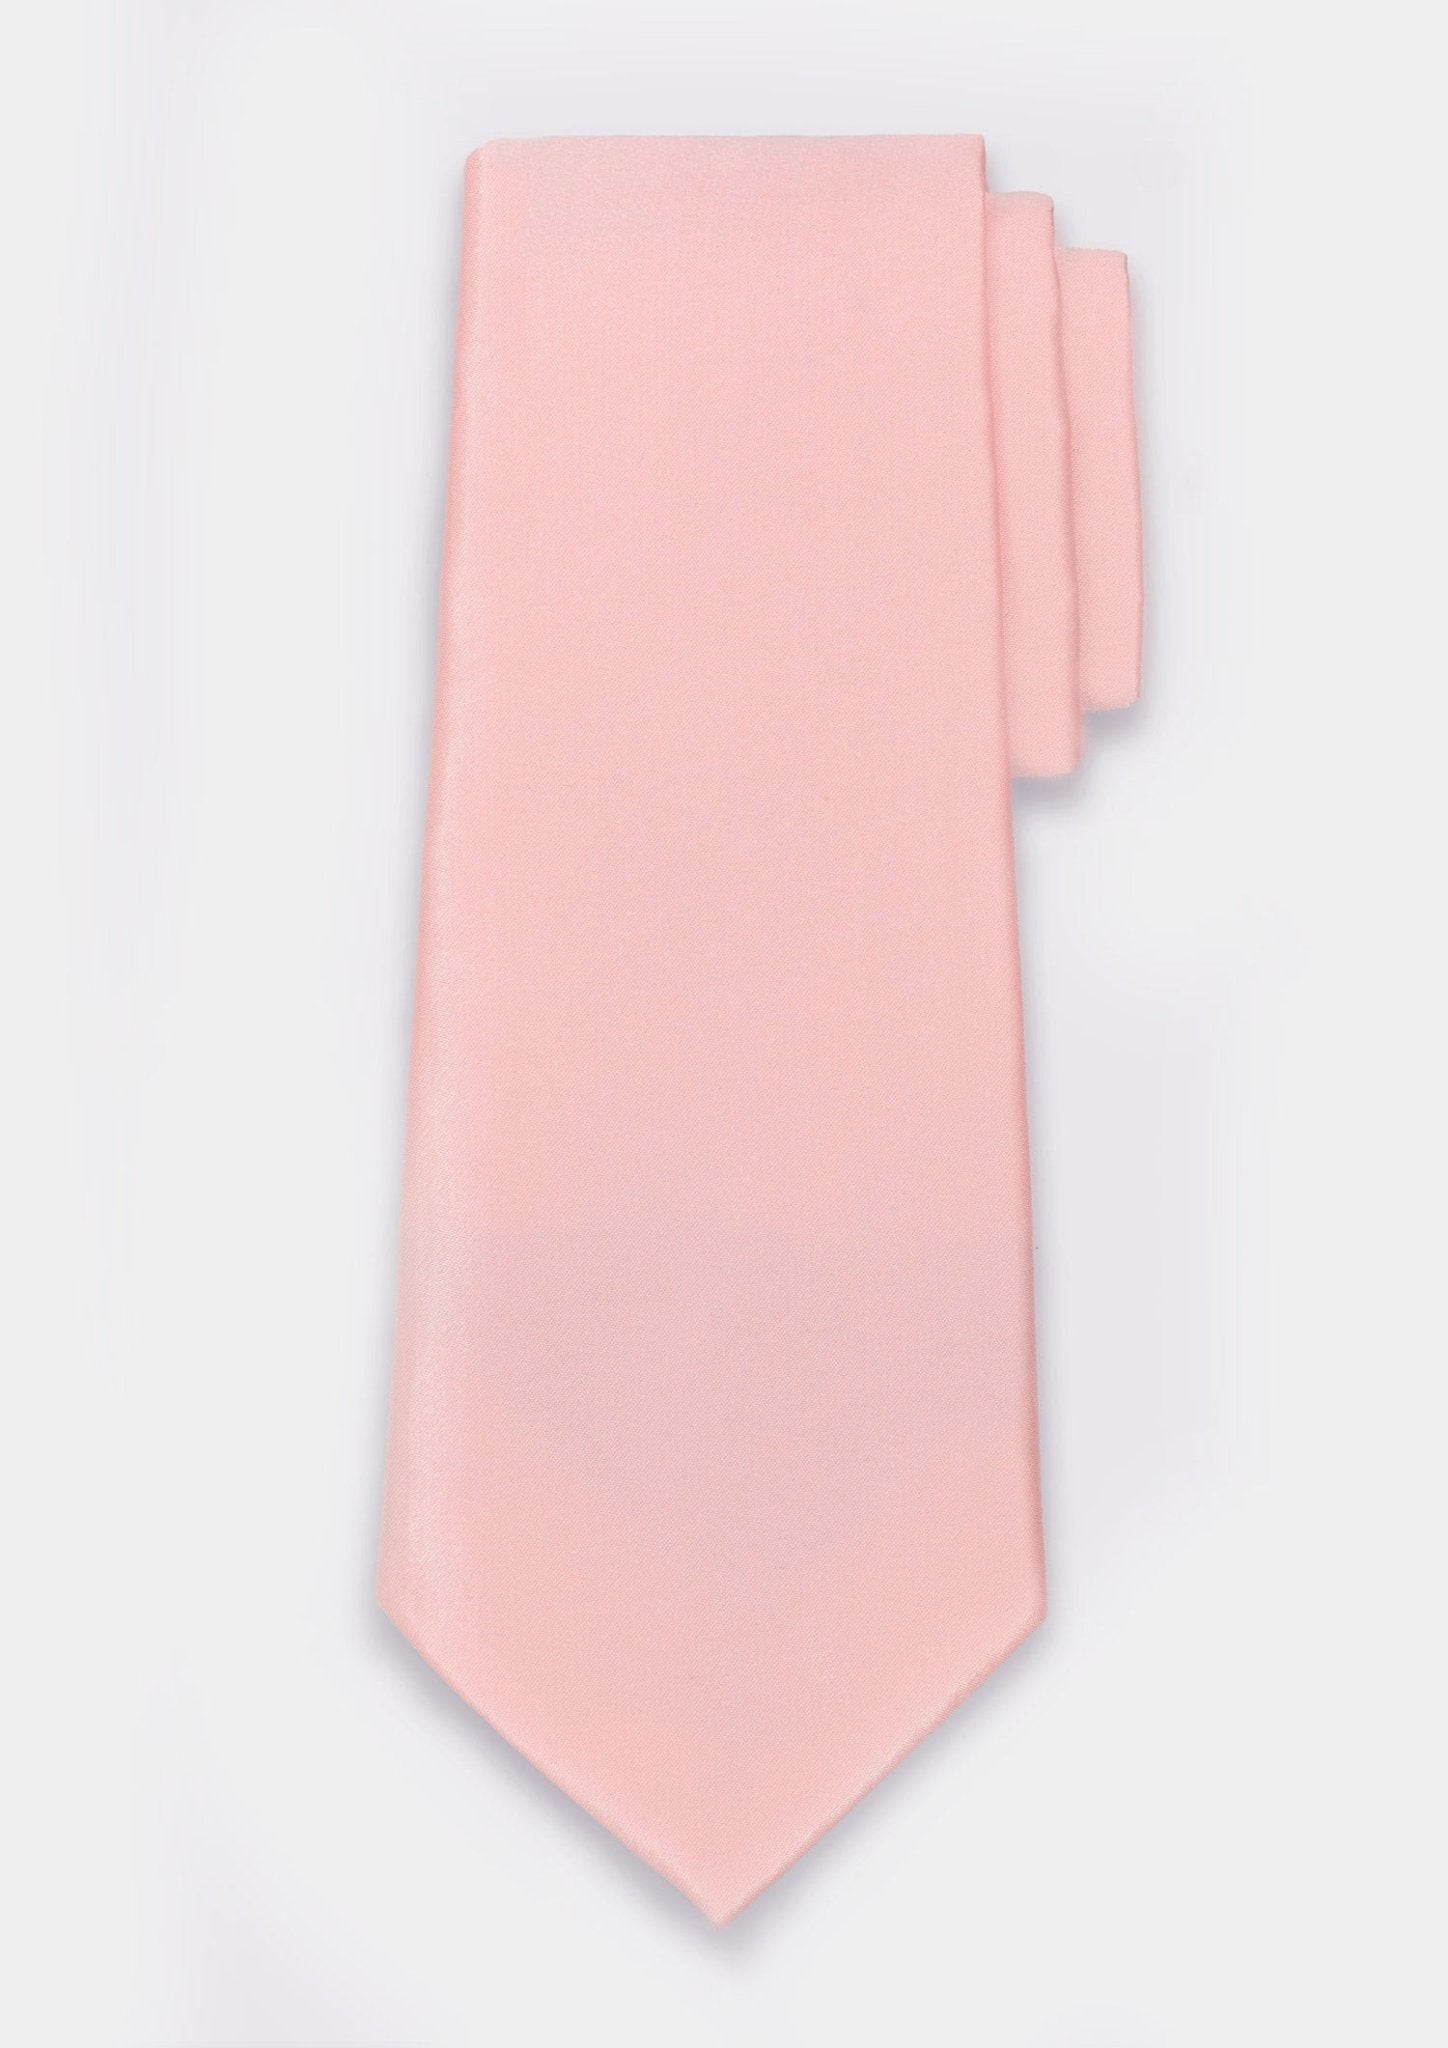 Soft Pink Tie